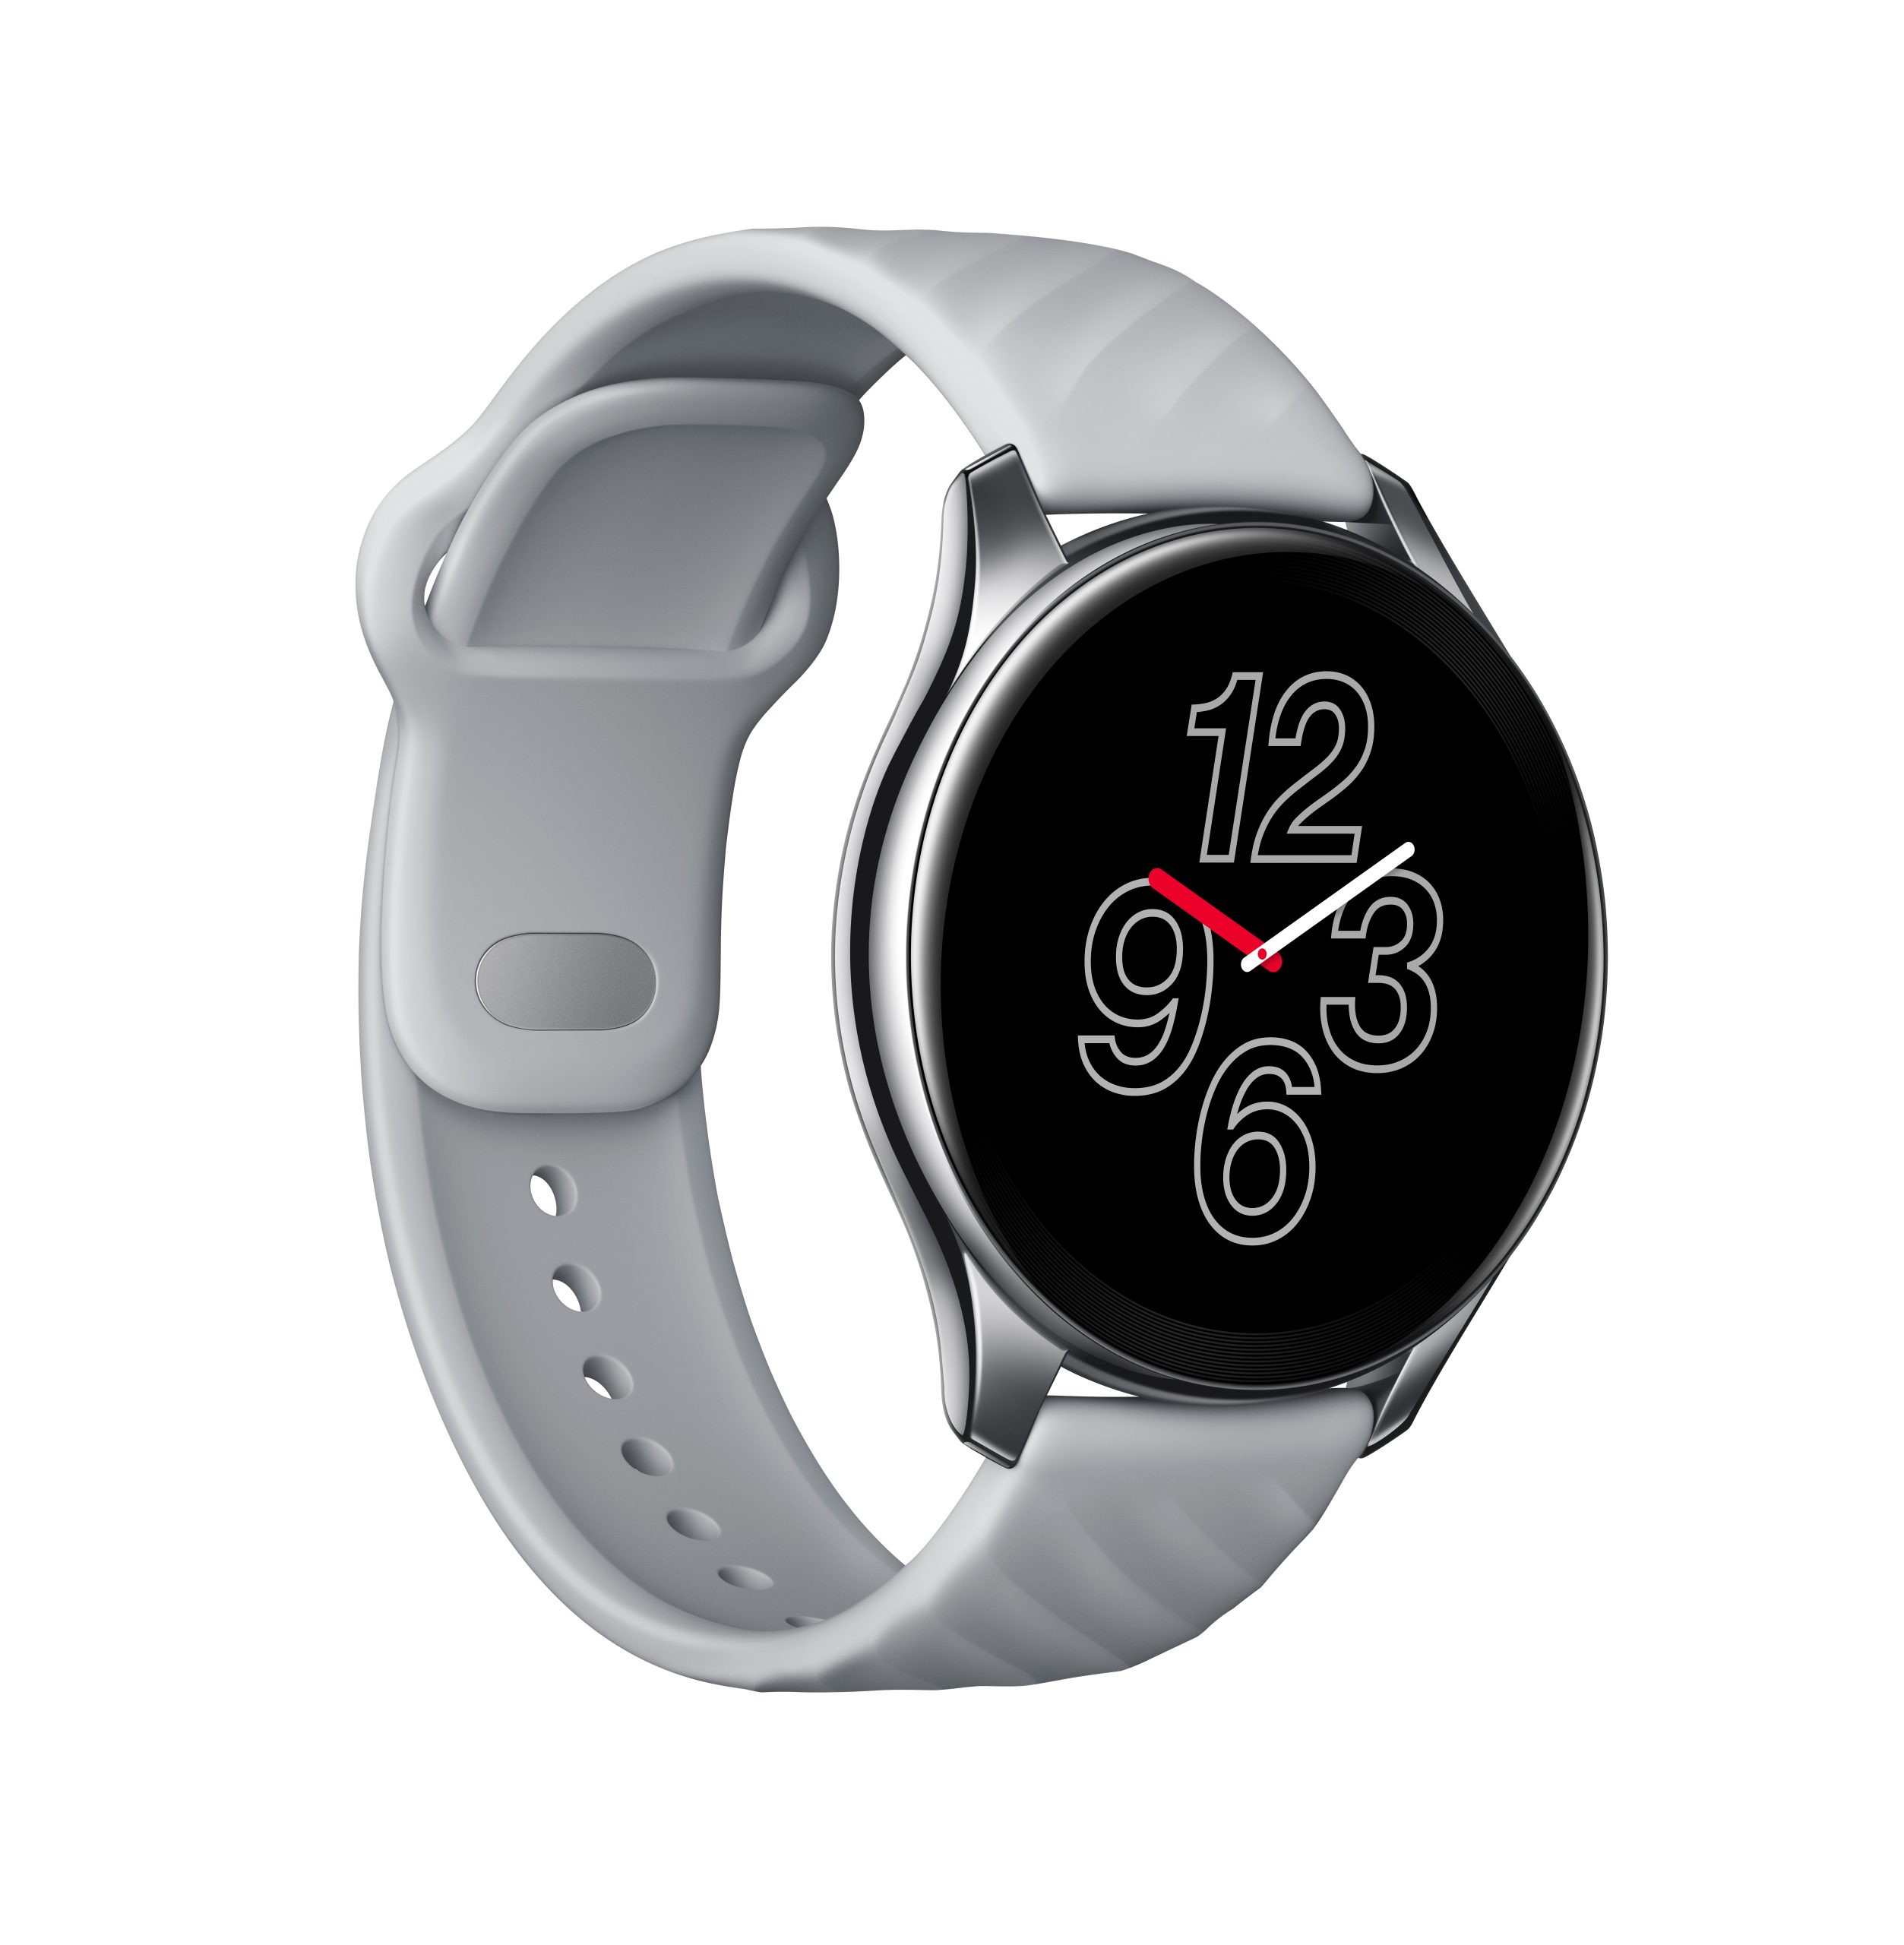 Die erste OnePlus Watch kann vorbestellt werden